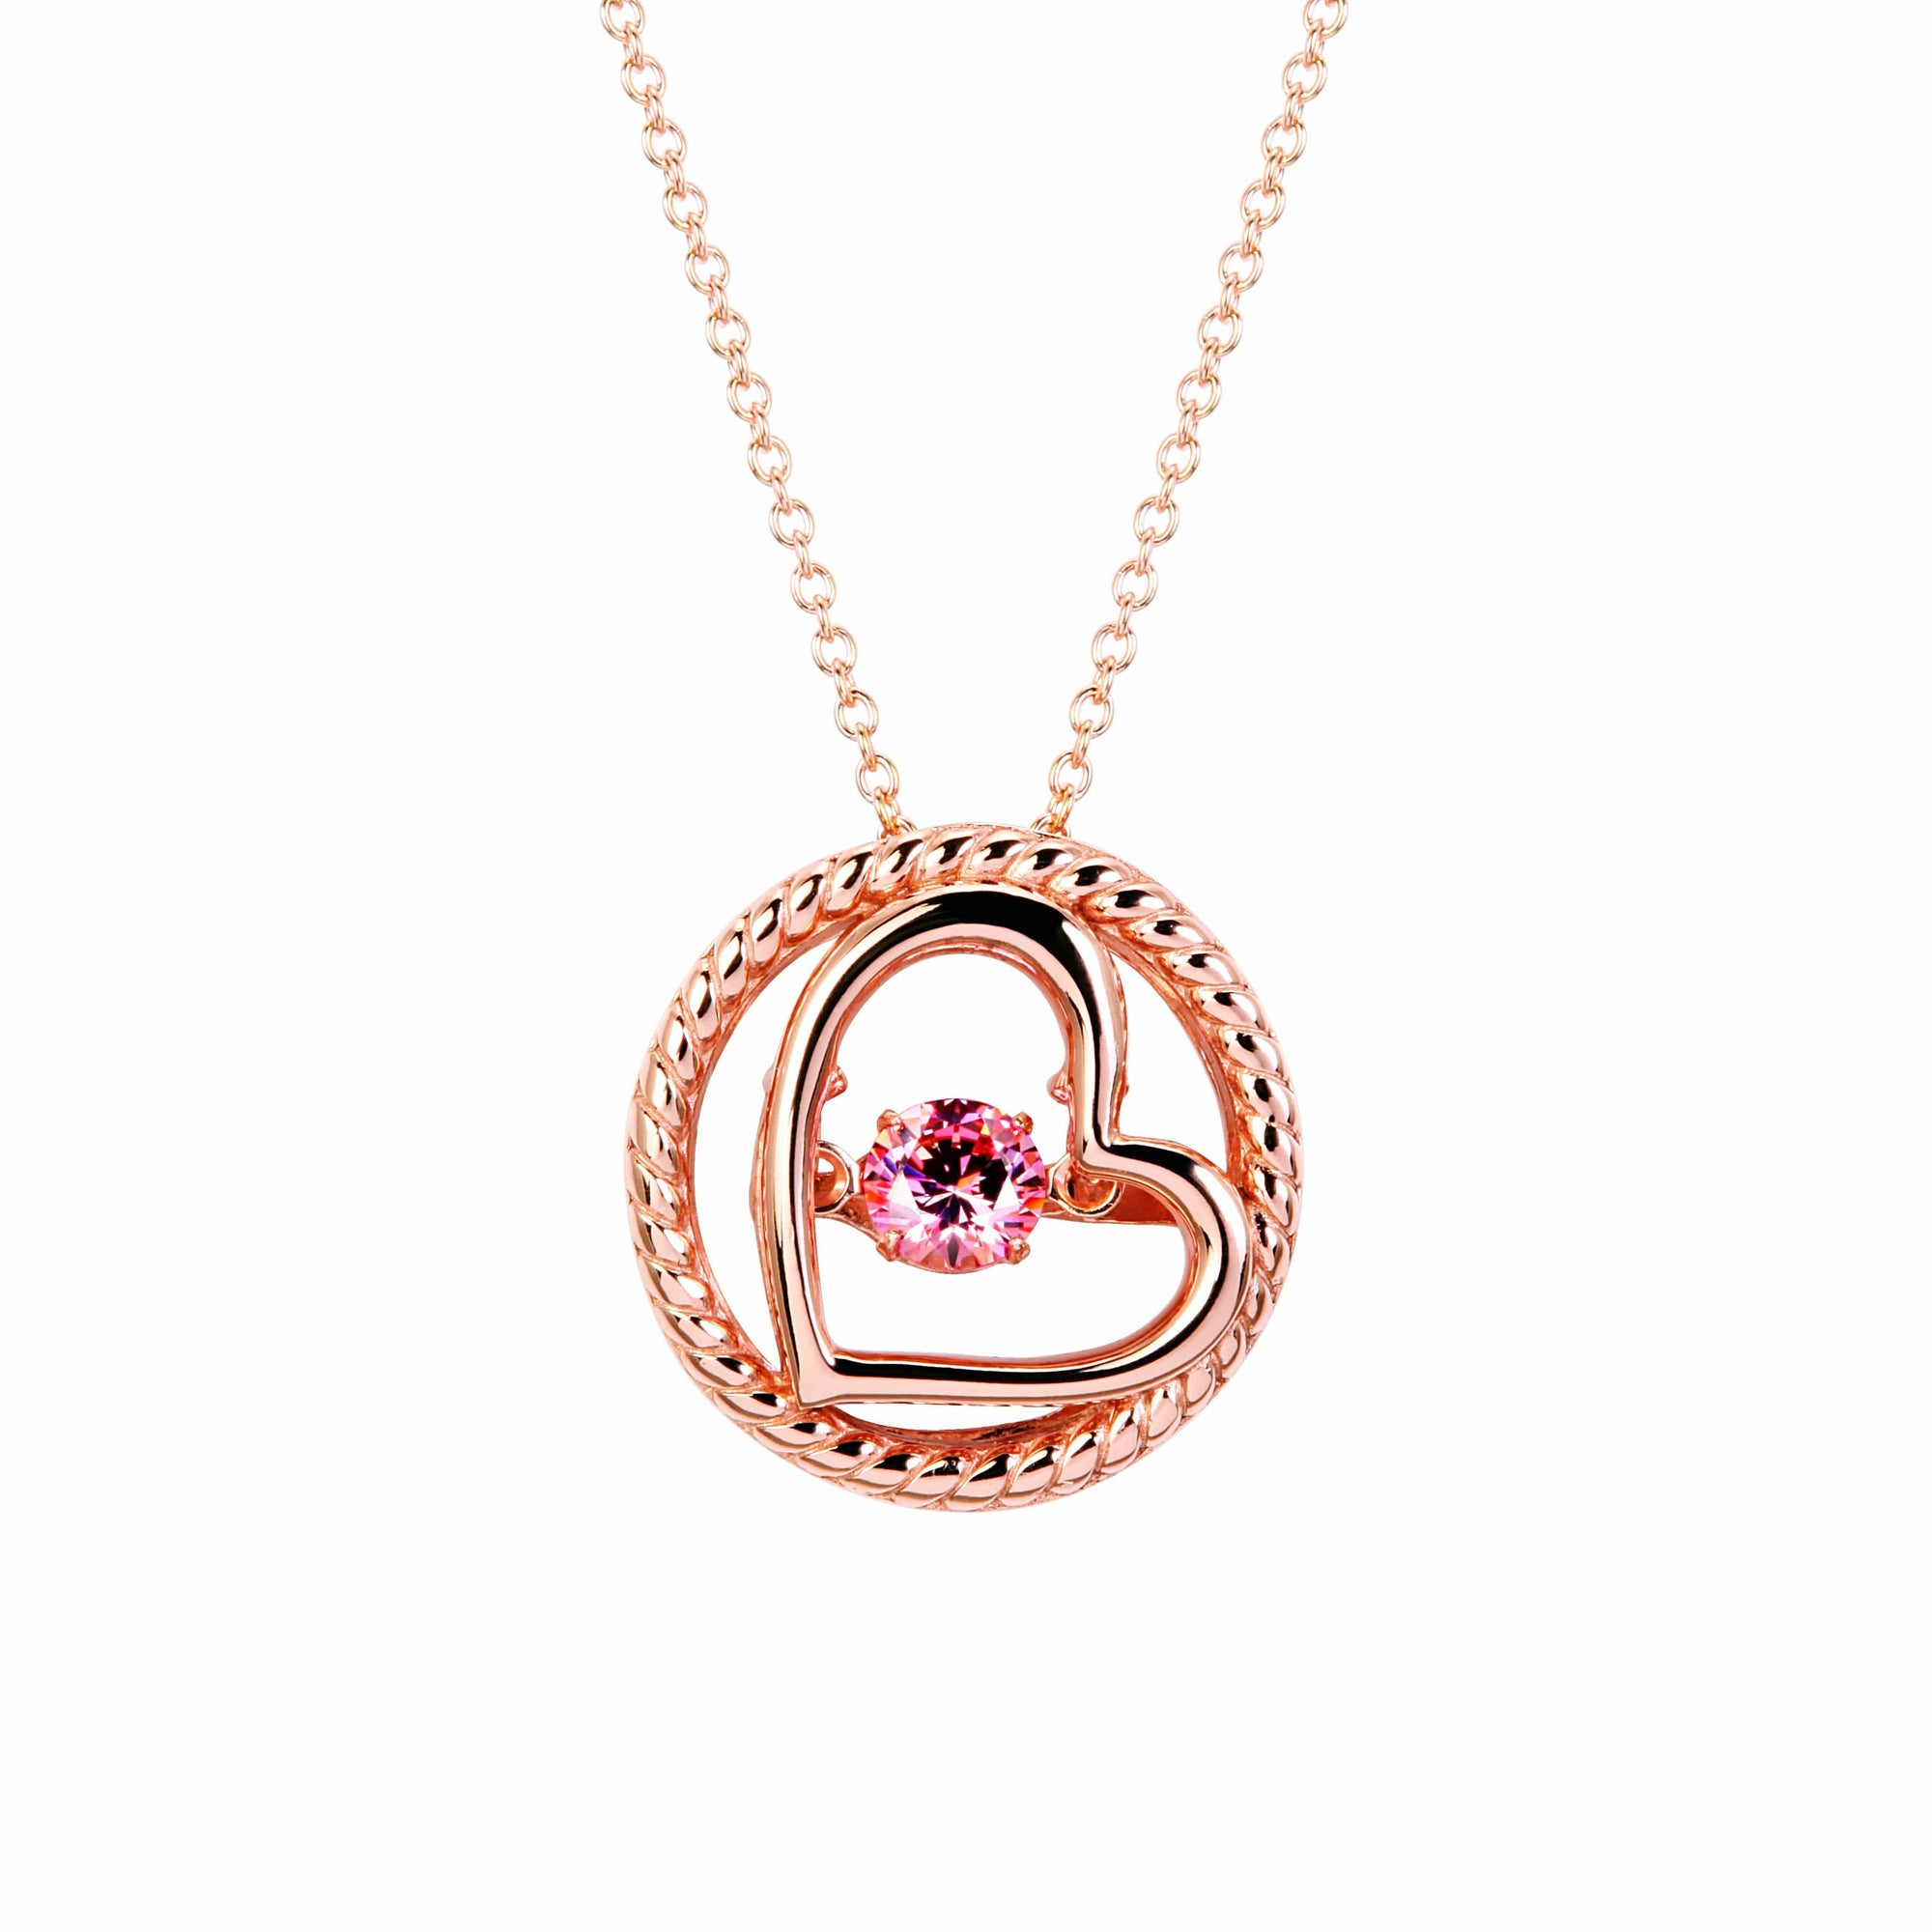 Fervor Montreal Dancing Gems Heart Necklace- Rose Gold Plated